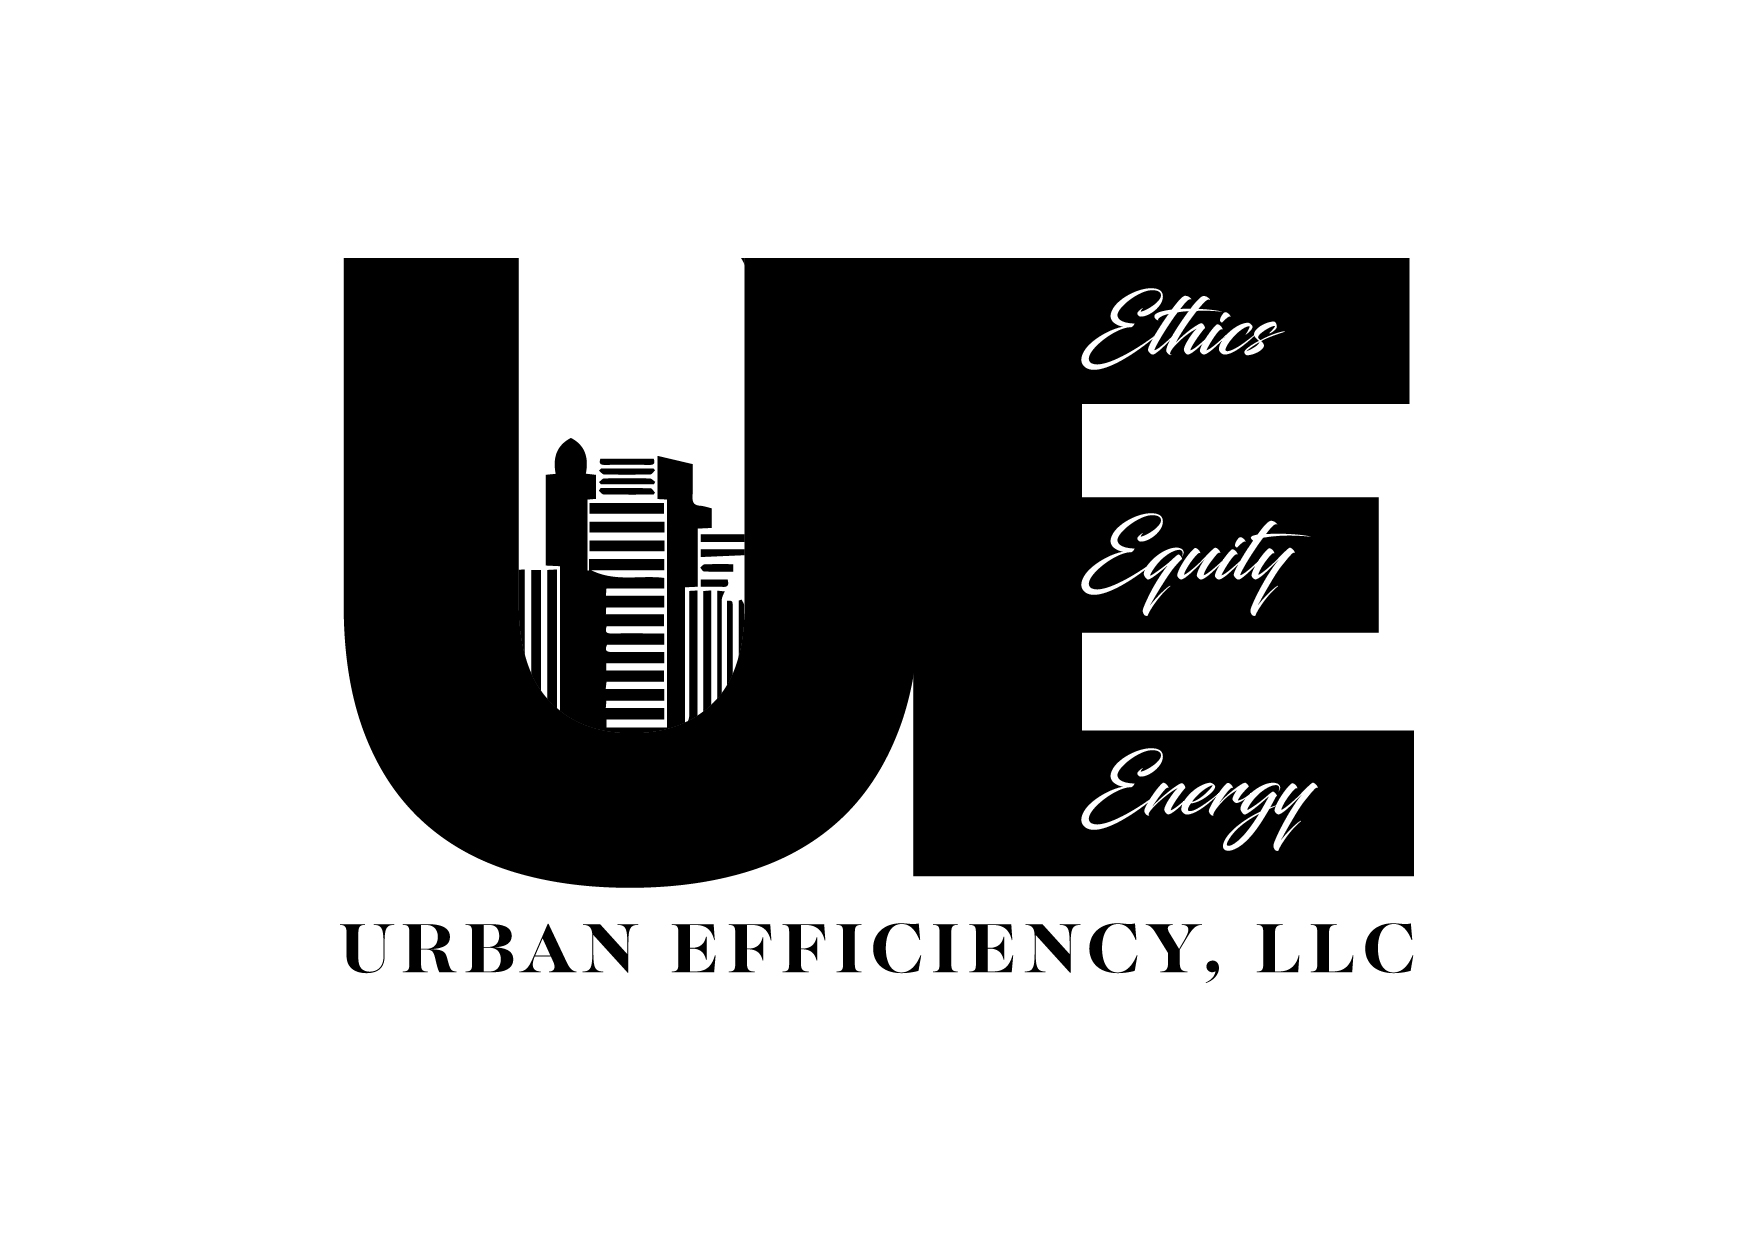 Urban Efficiency, LLC